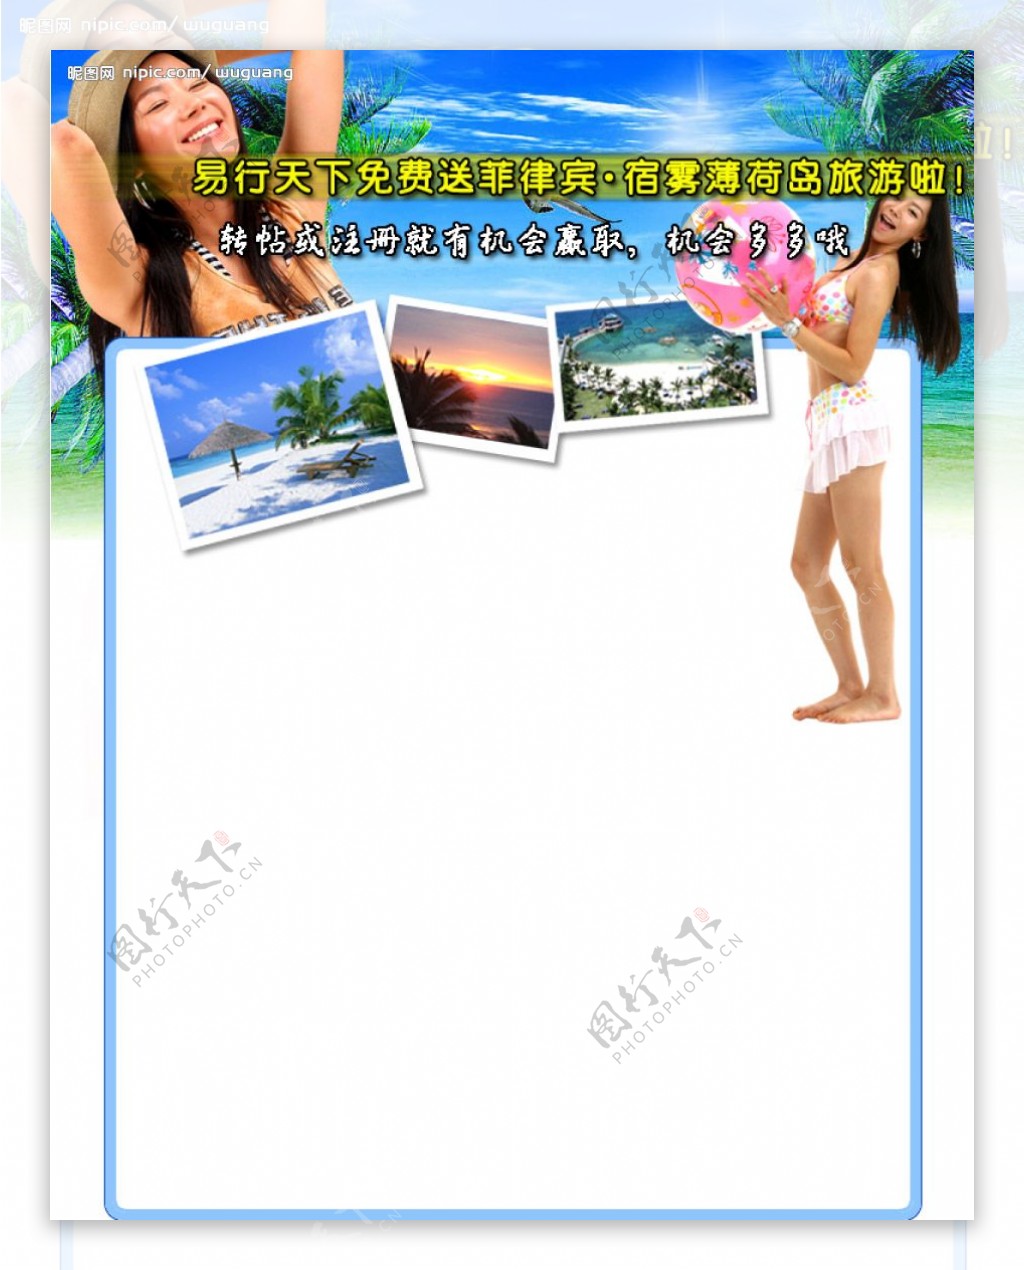 菲律宾旅游活动专题页面图片